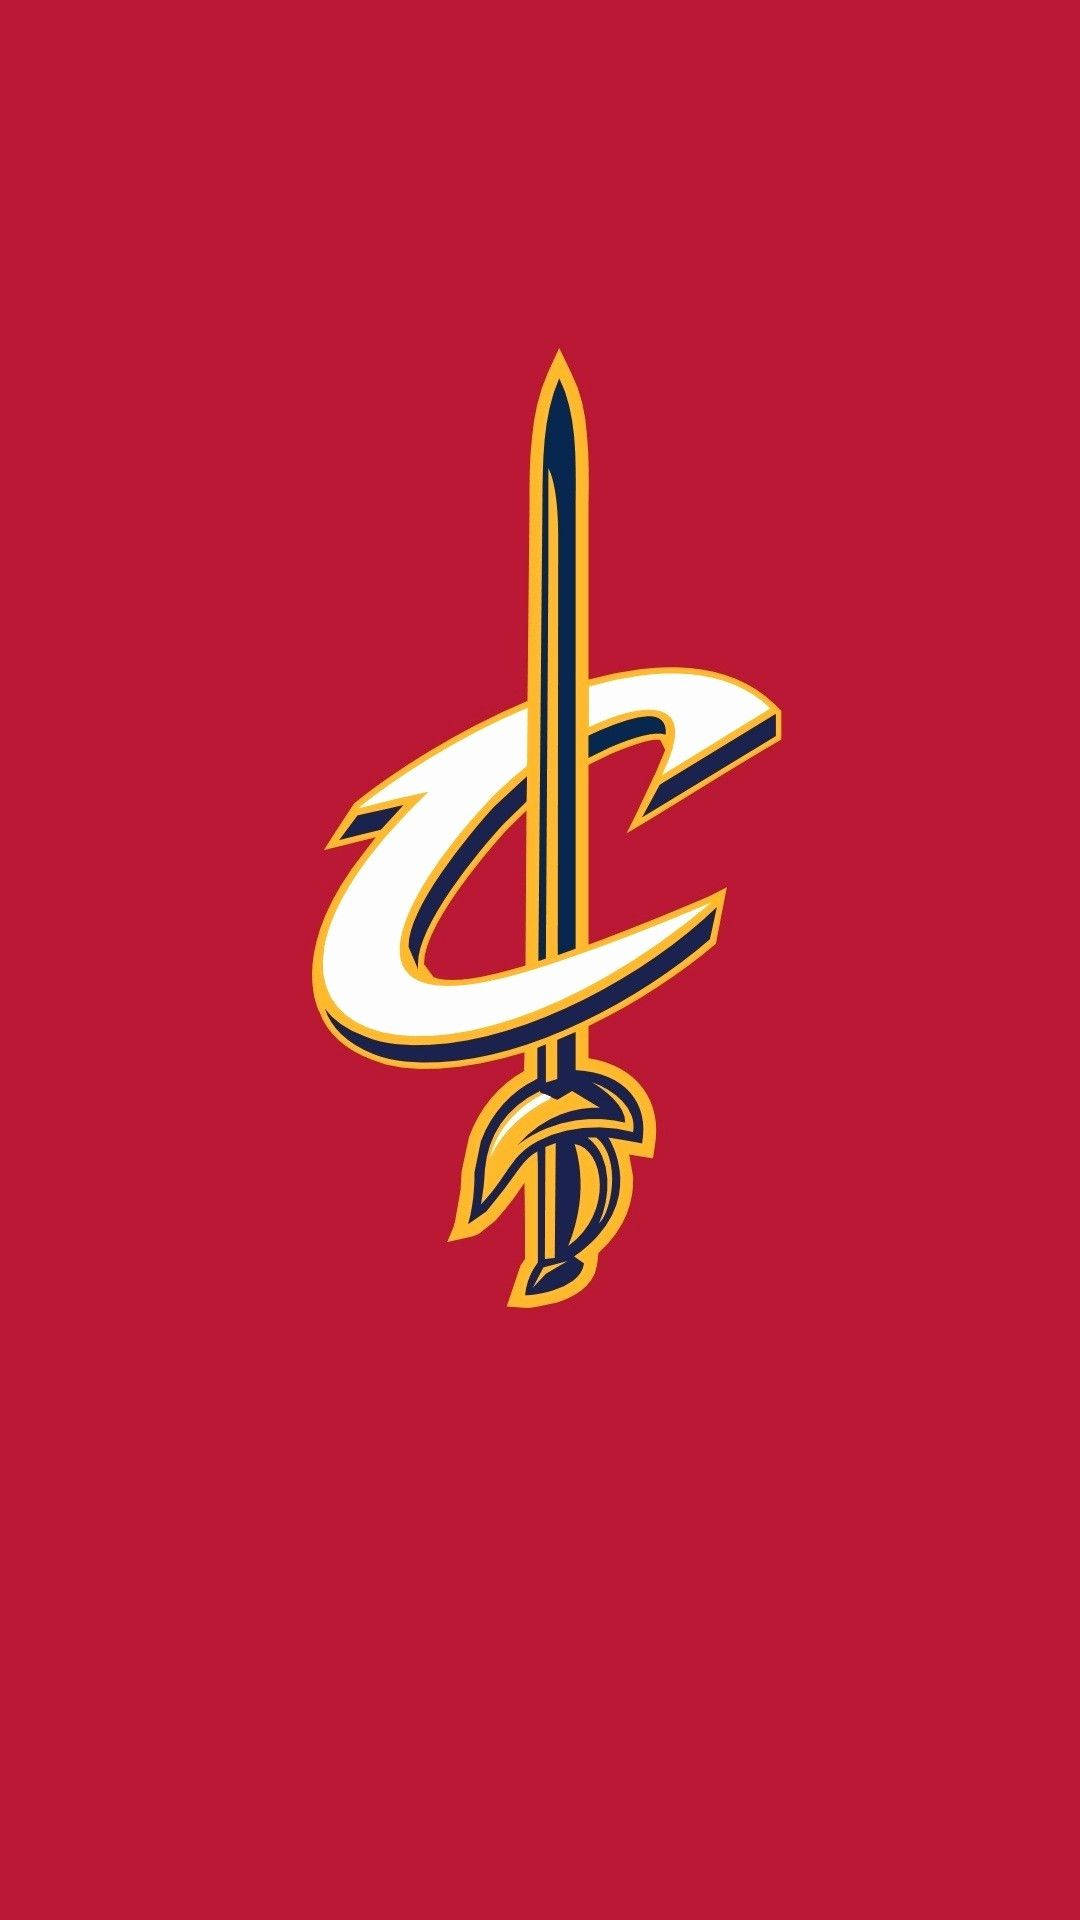 Logotipode Los Cleveland Cavaliers En Blanco Y Dorado. Fondo de pantalla